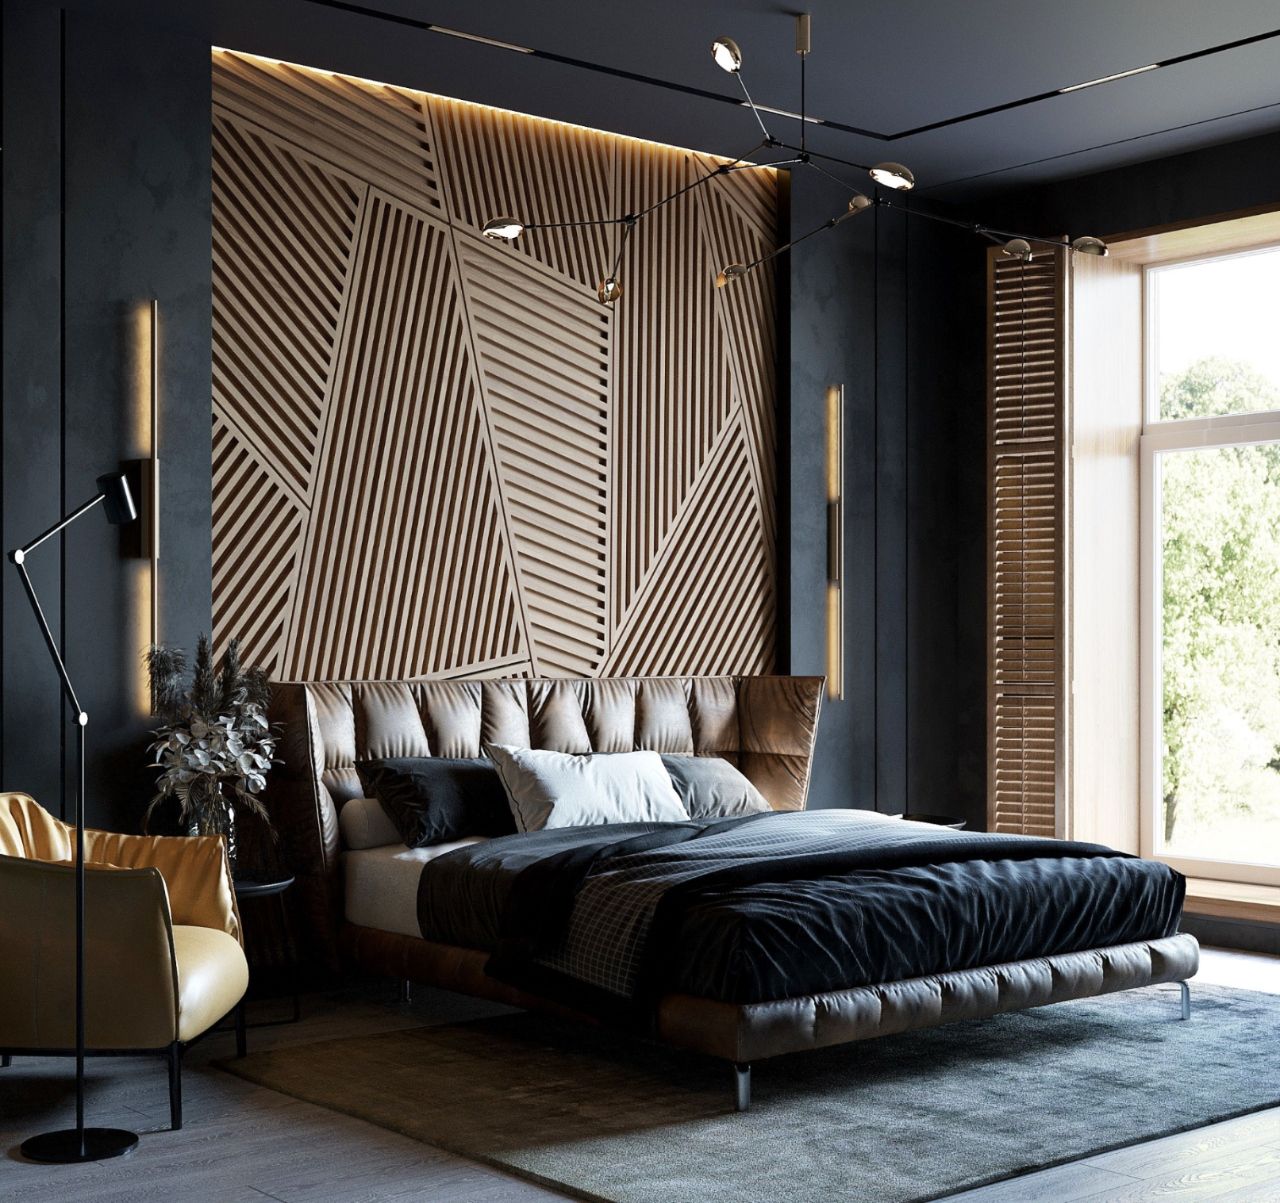 Vách ốp đầu giường được làm từ gỗ tự nhiên mang đến vẻ đẹp sang trọng